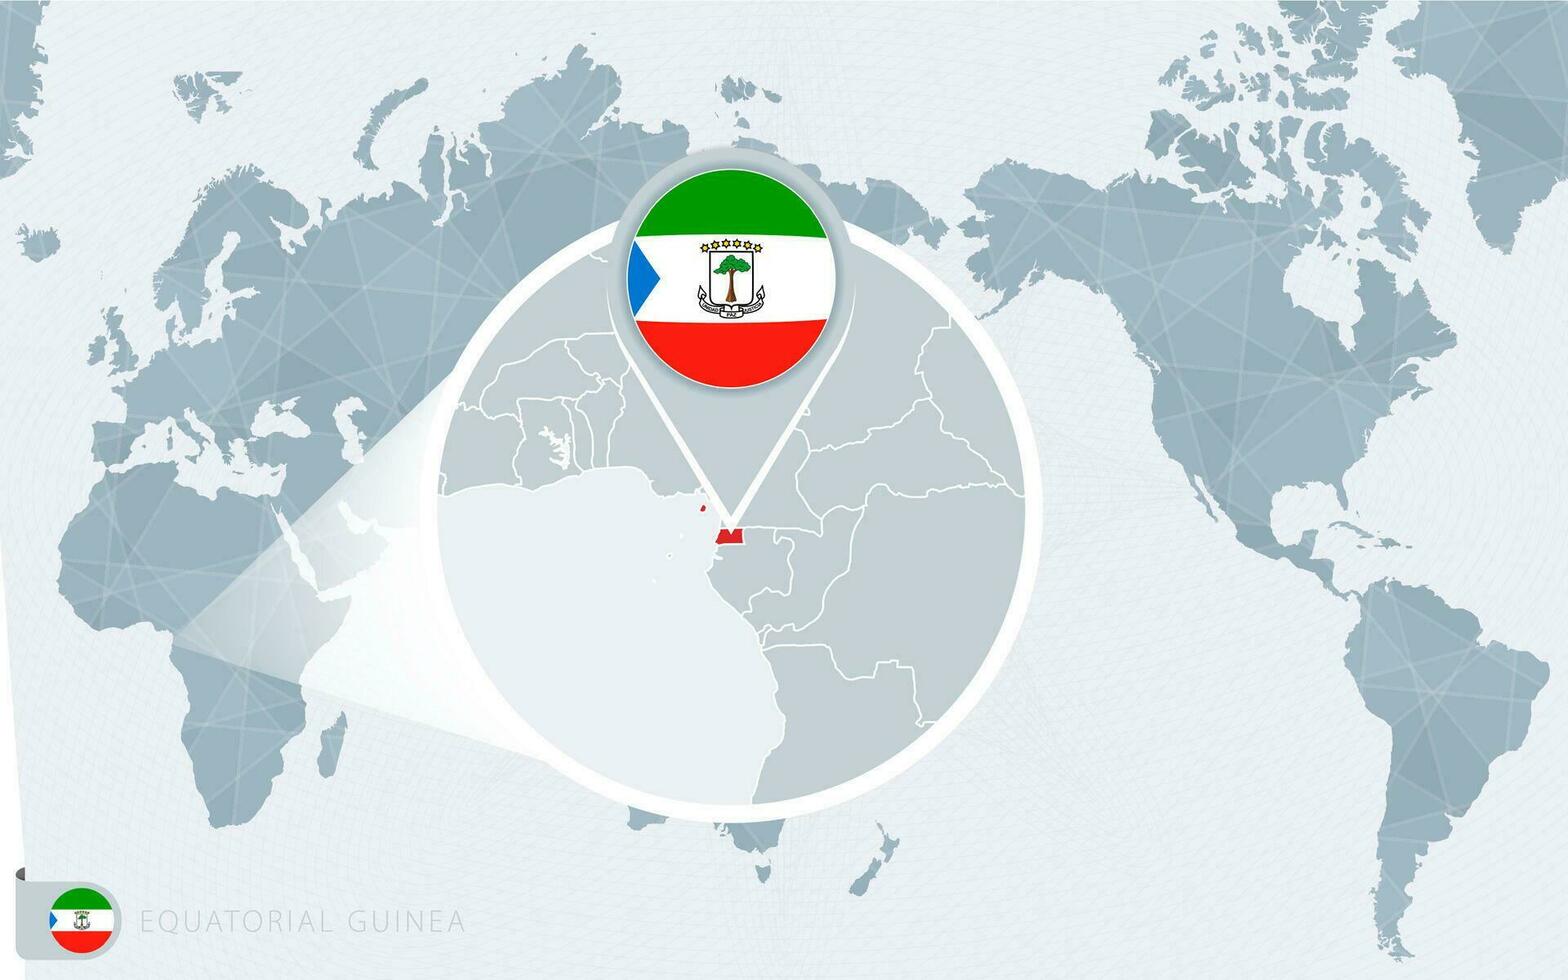 pacifique centré monde carte avec agrandie équatorial Guinée. drapeau et carte de équatorial Guinée. vecteur